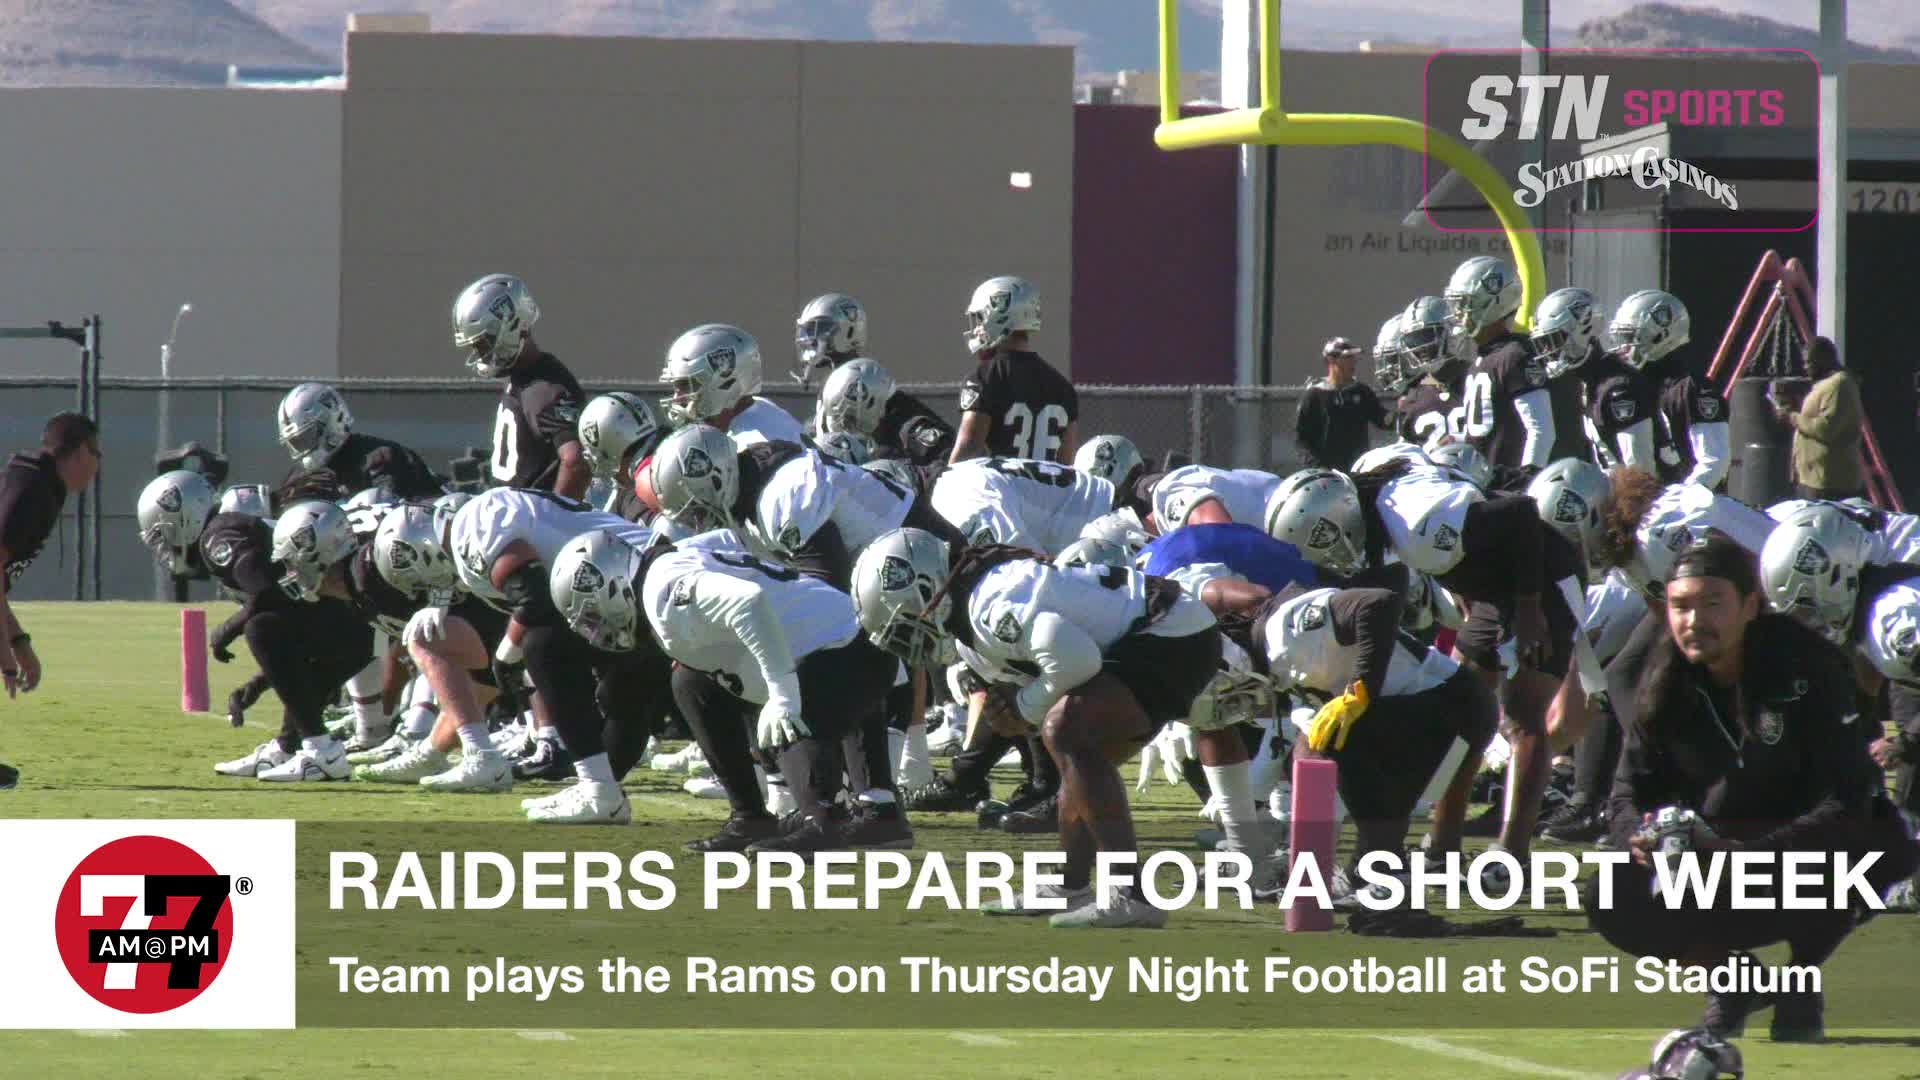 Raiders prepare for short week